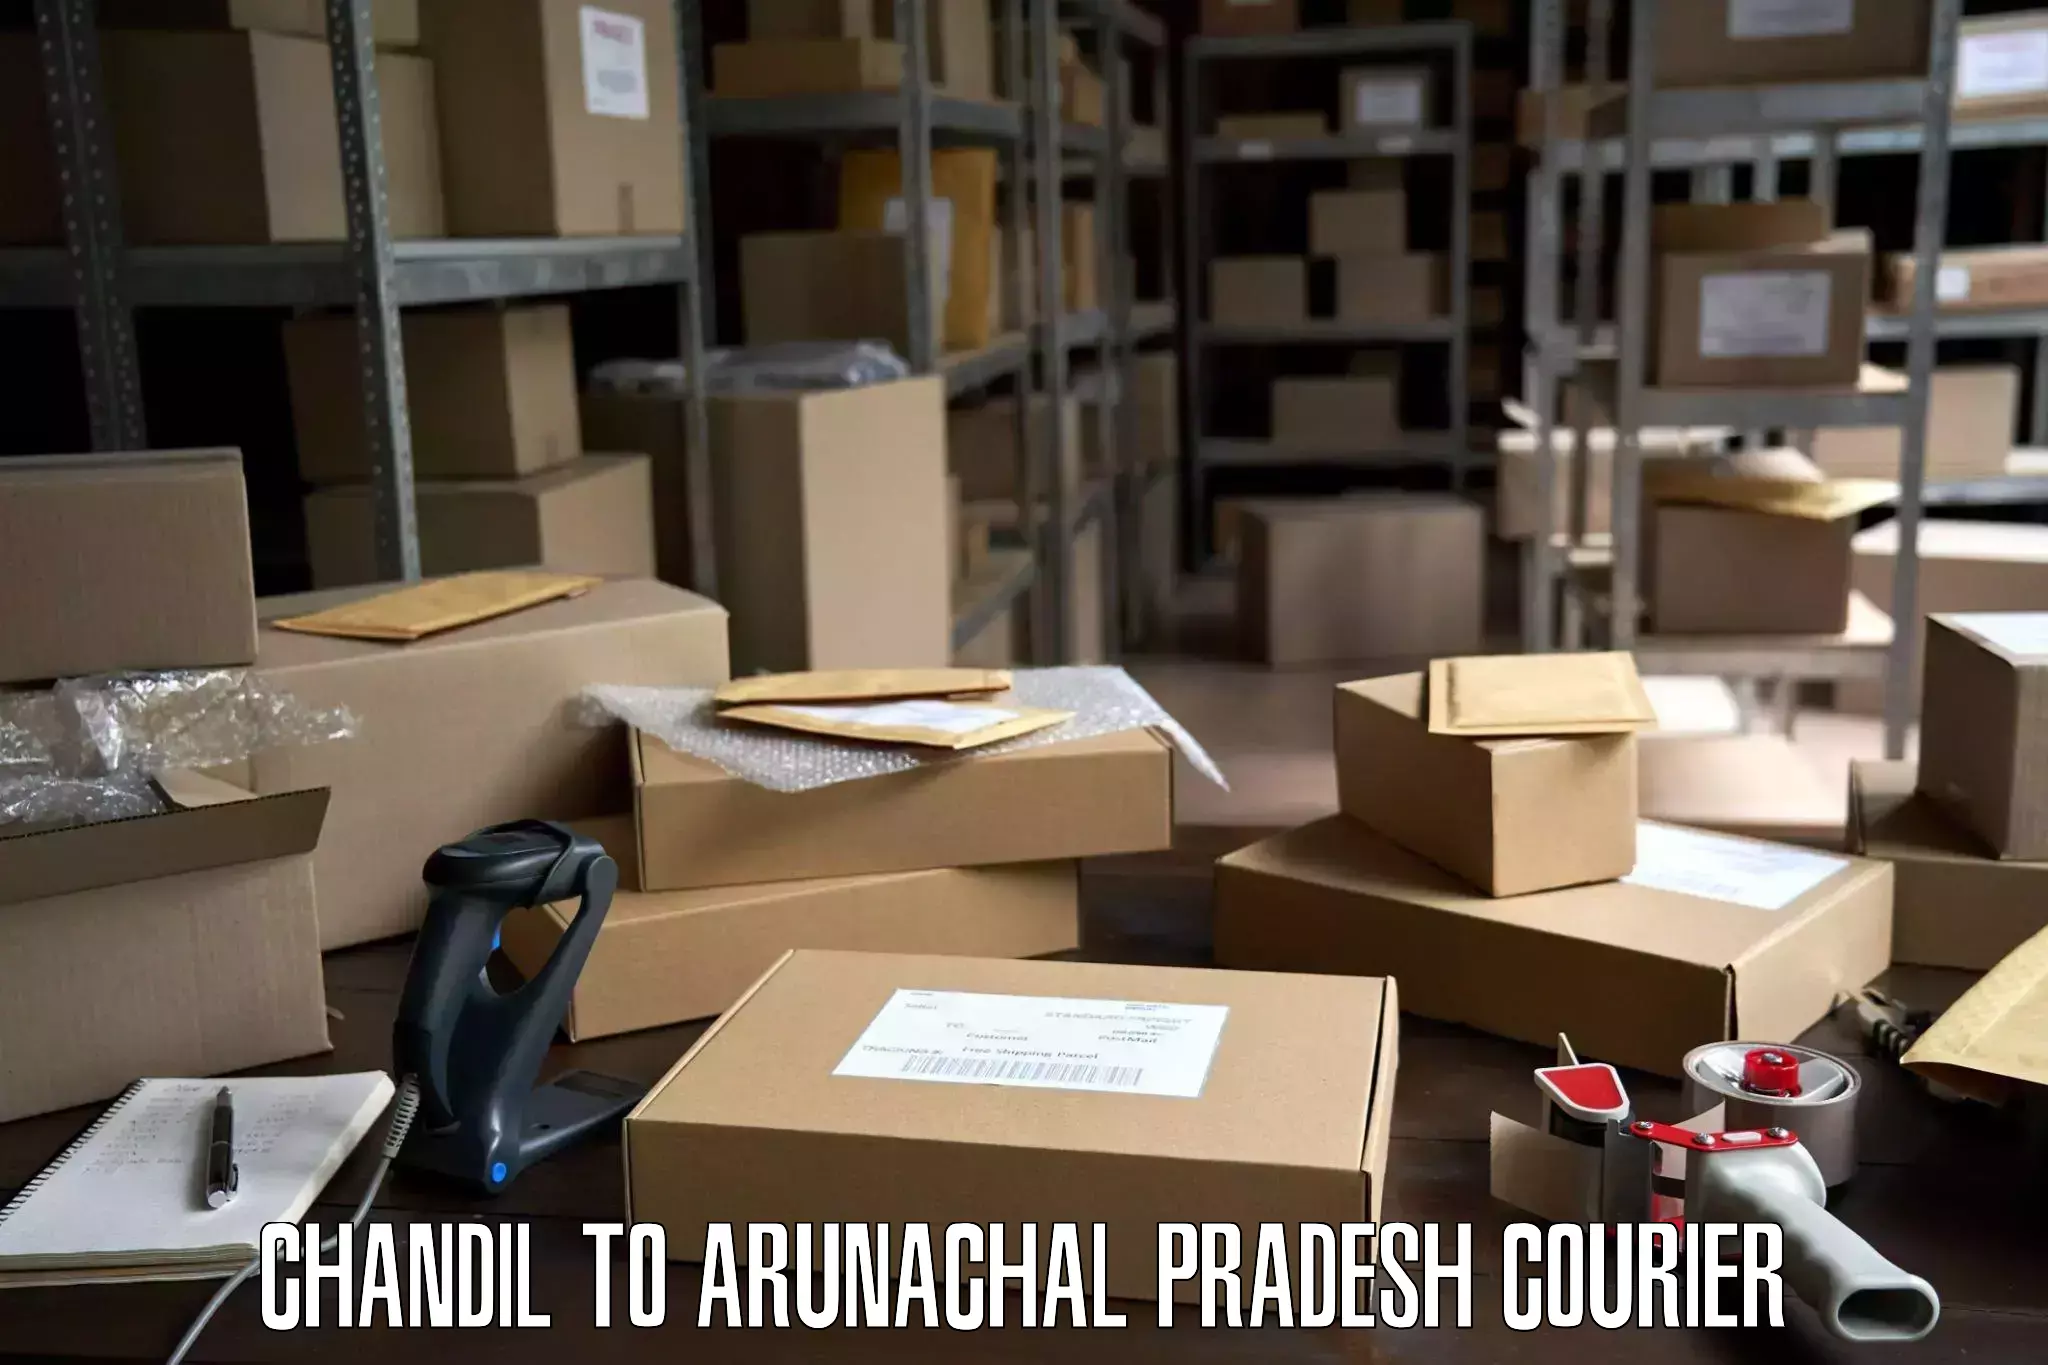 Door-to-door relocation services Chandil to Arunachal Pradesh